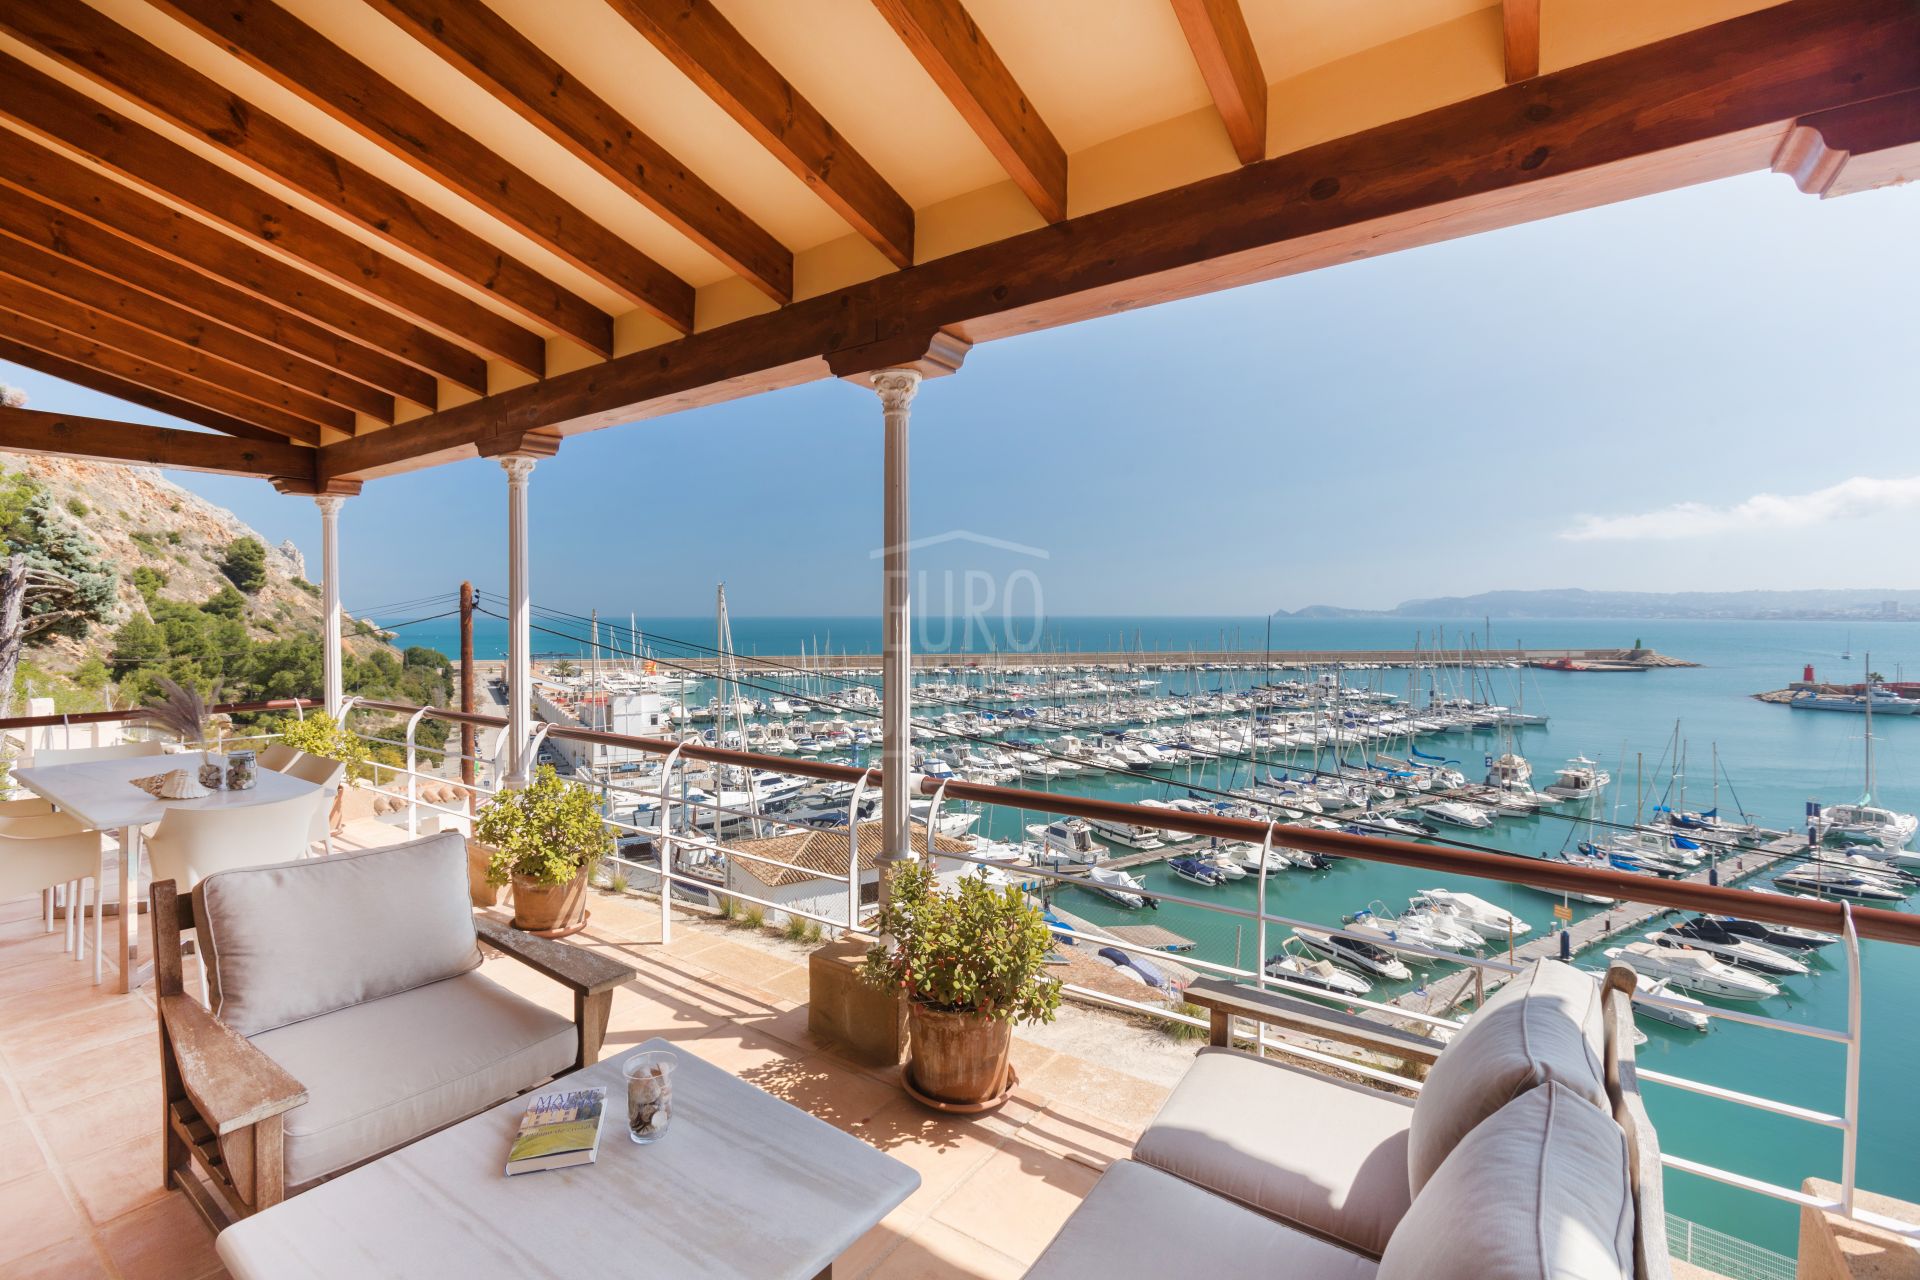 Villa te koop in het gebied van de haven van Jávea, met spectaculair uitzicht op de zee en de Yacht Club